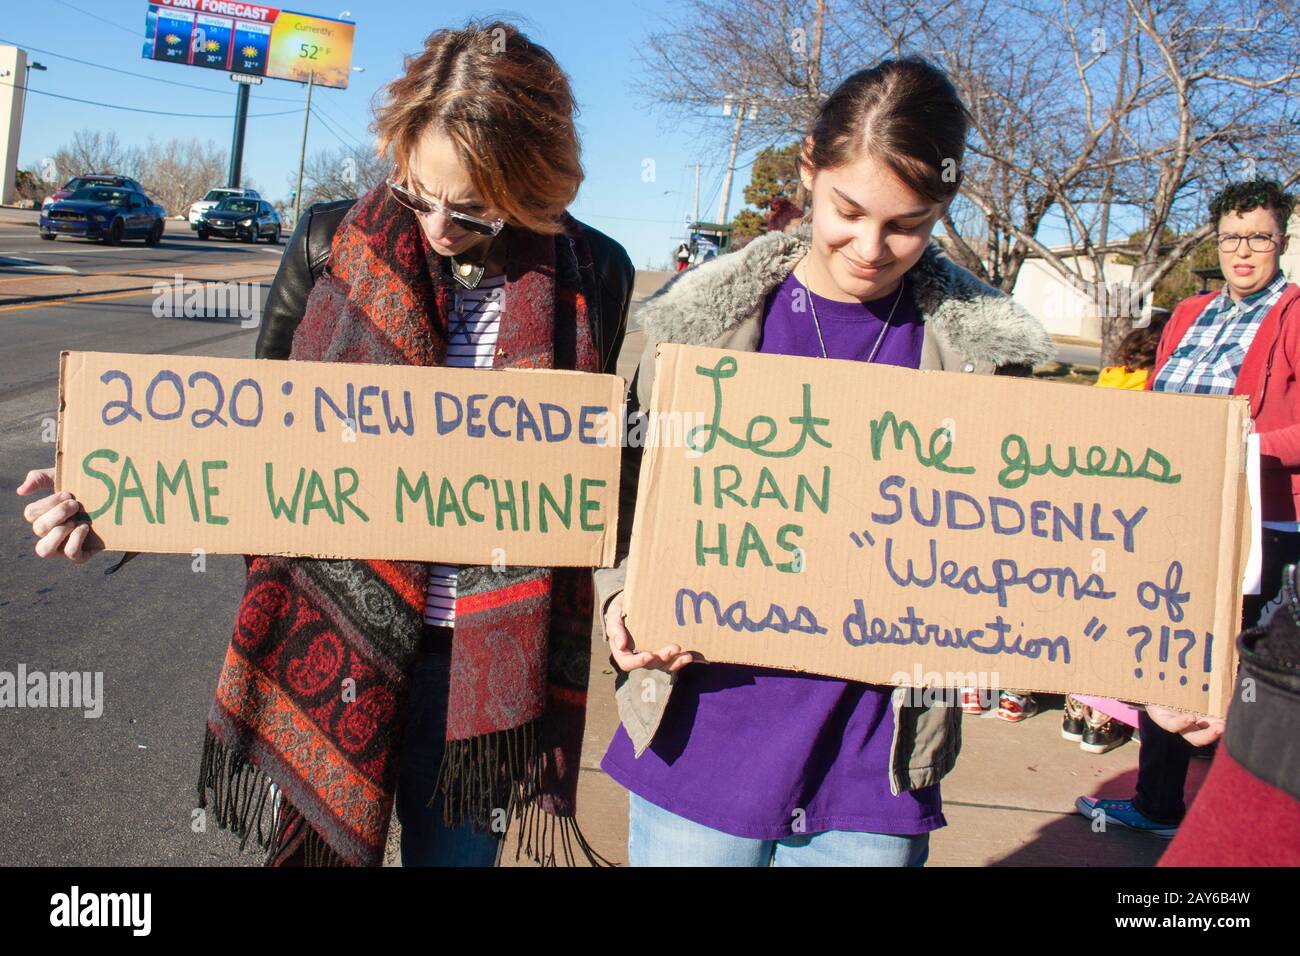 01-04-2020 Tulsa USA - Mutter und Tochter mit Protestzeichen - man sagt, Lassen Sie mich raten - der Iran hat plötzlich Massenvernichtungswaffen Stockfoto